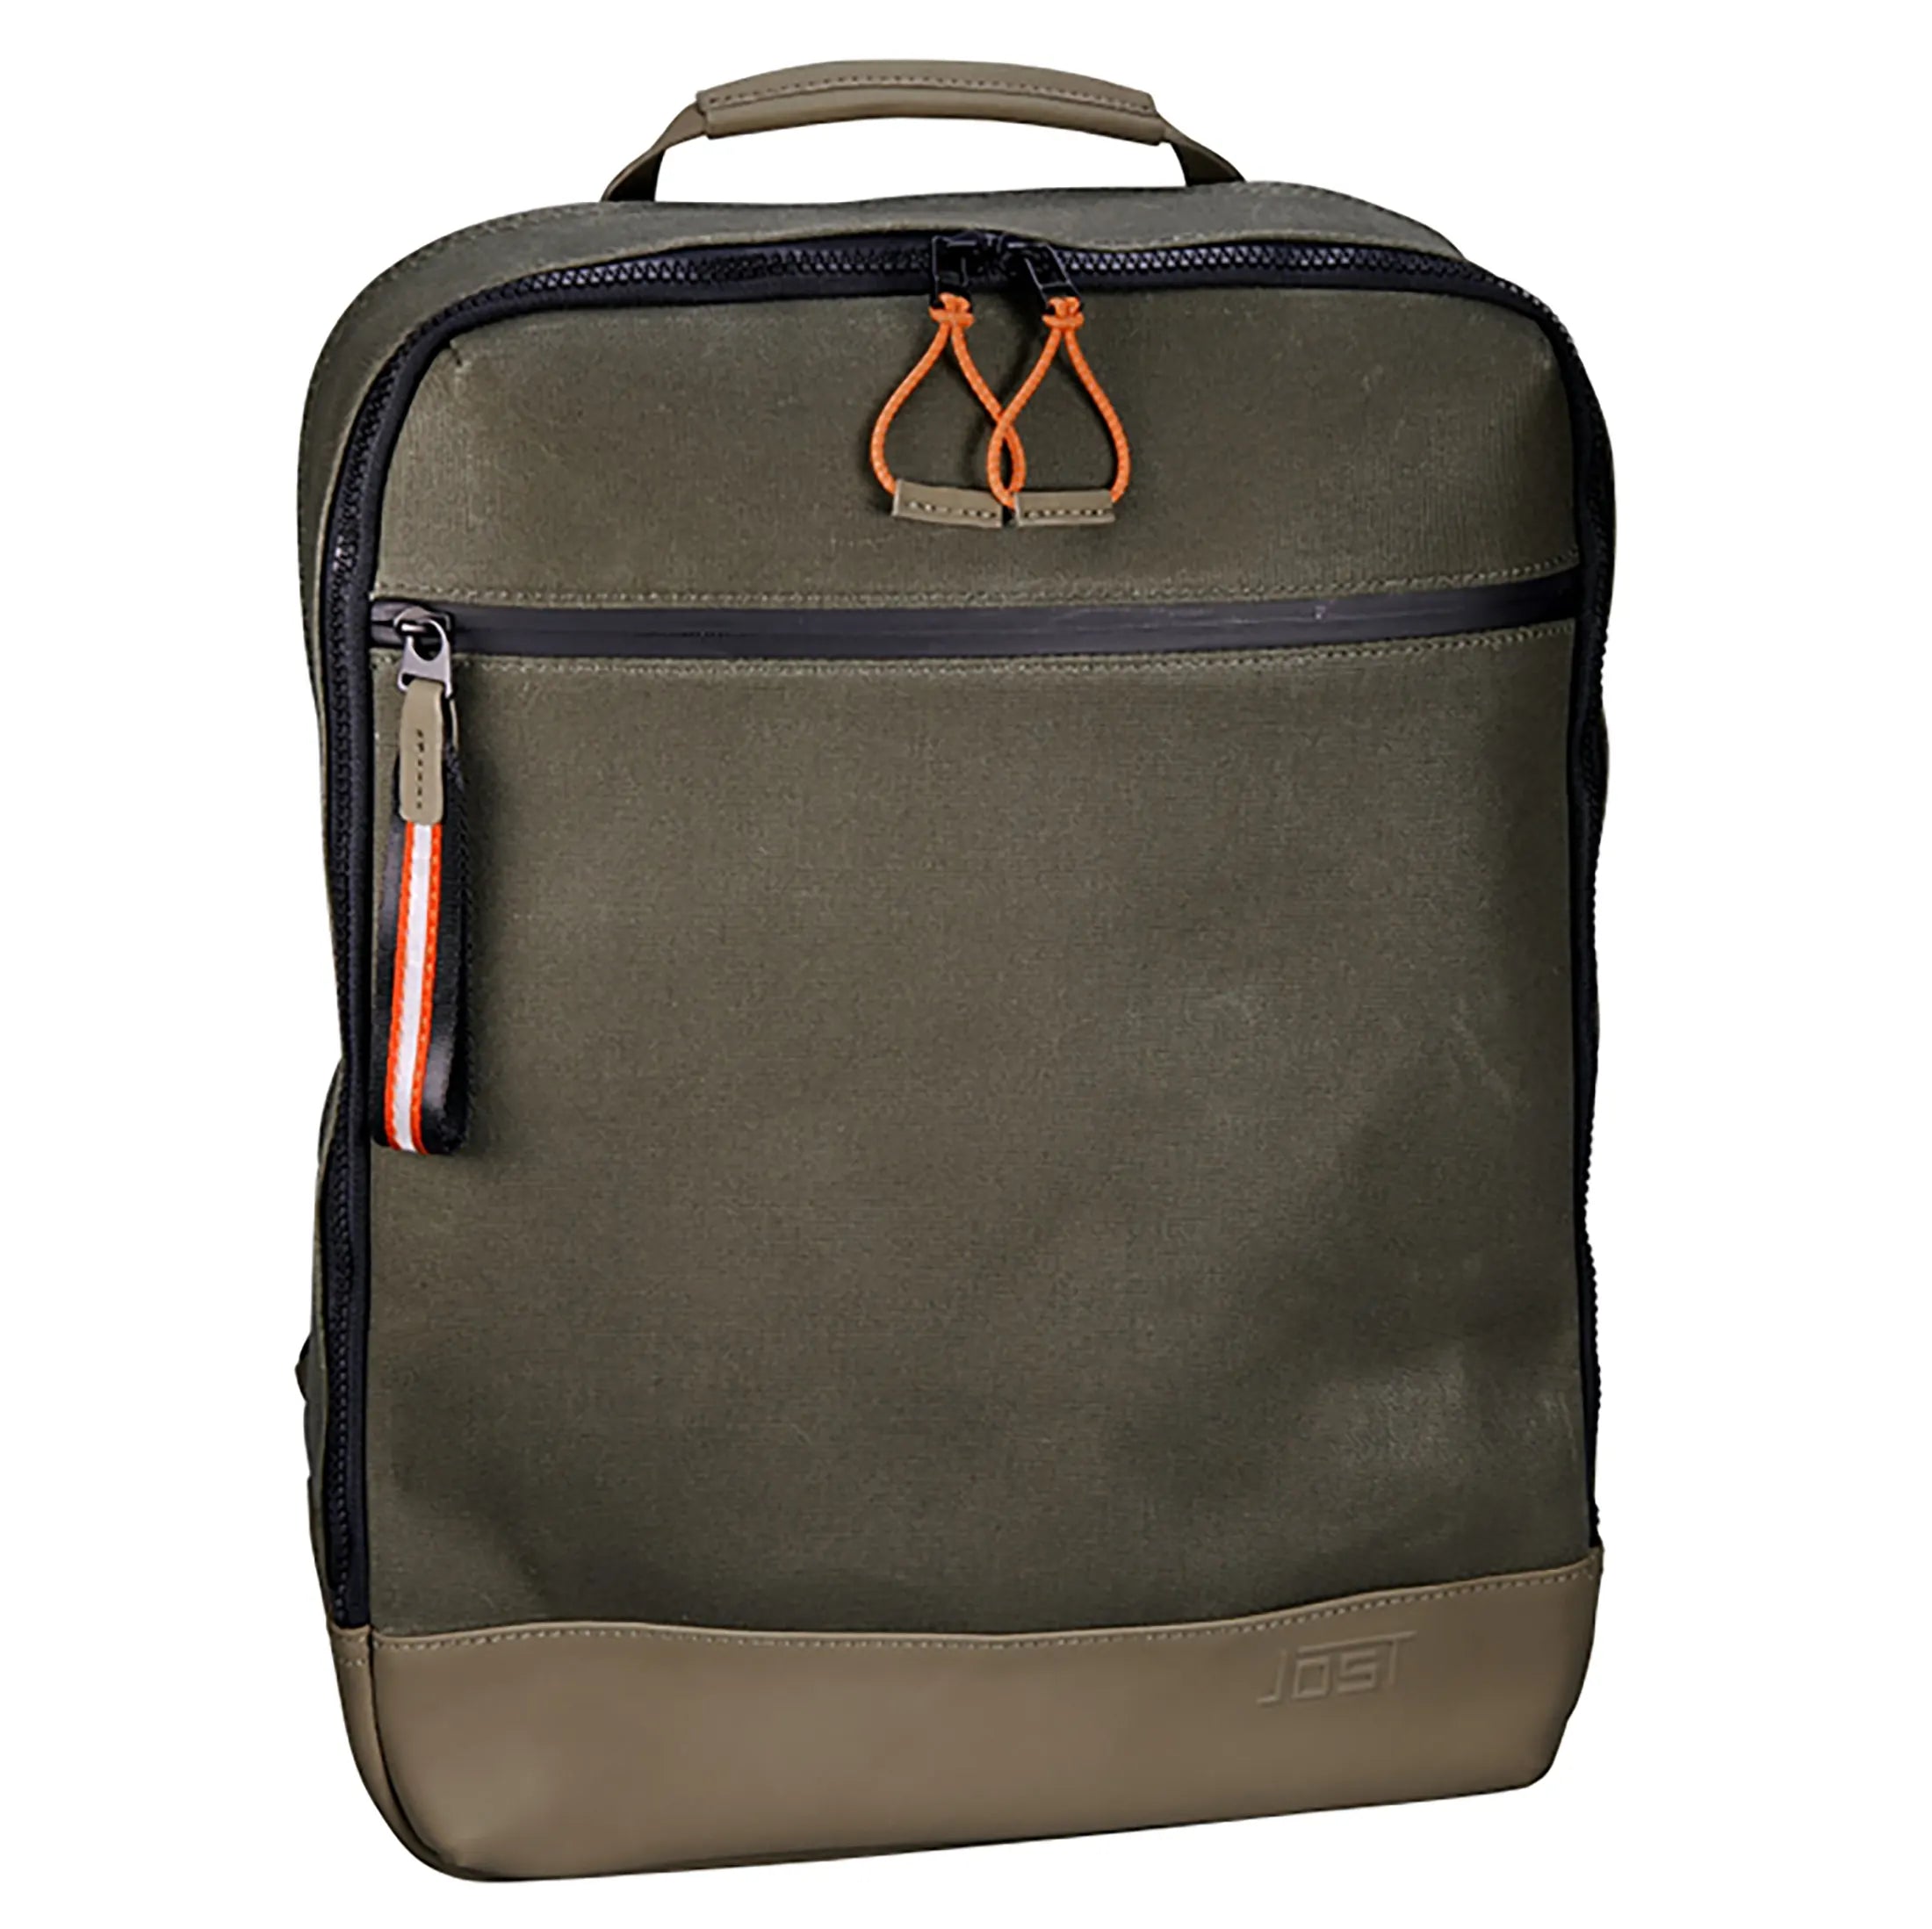 Jost Ystad sac à dos daypack avec compartiment pour ordinateur portable 44 cm - olive